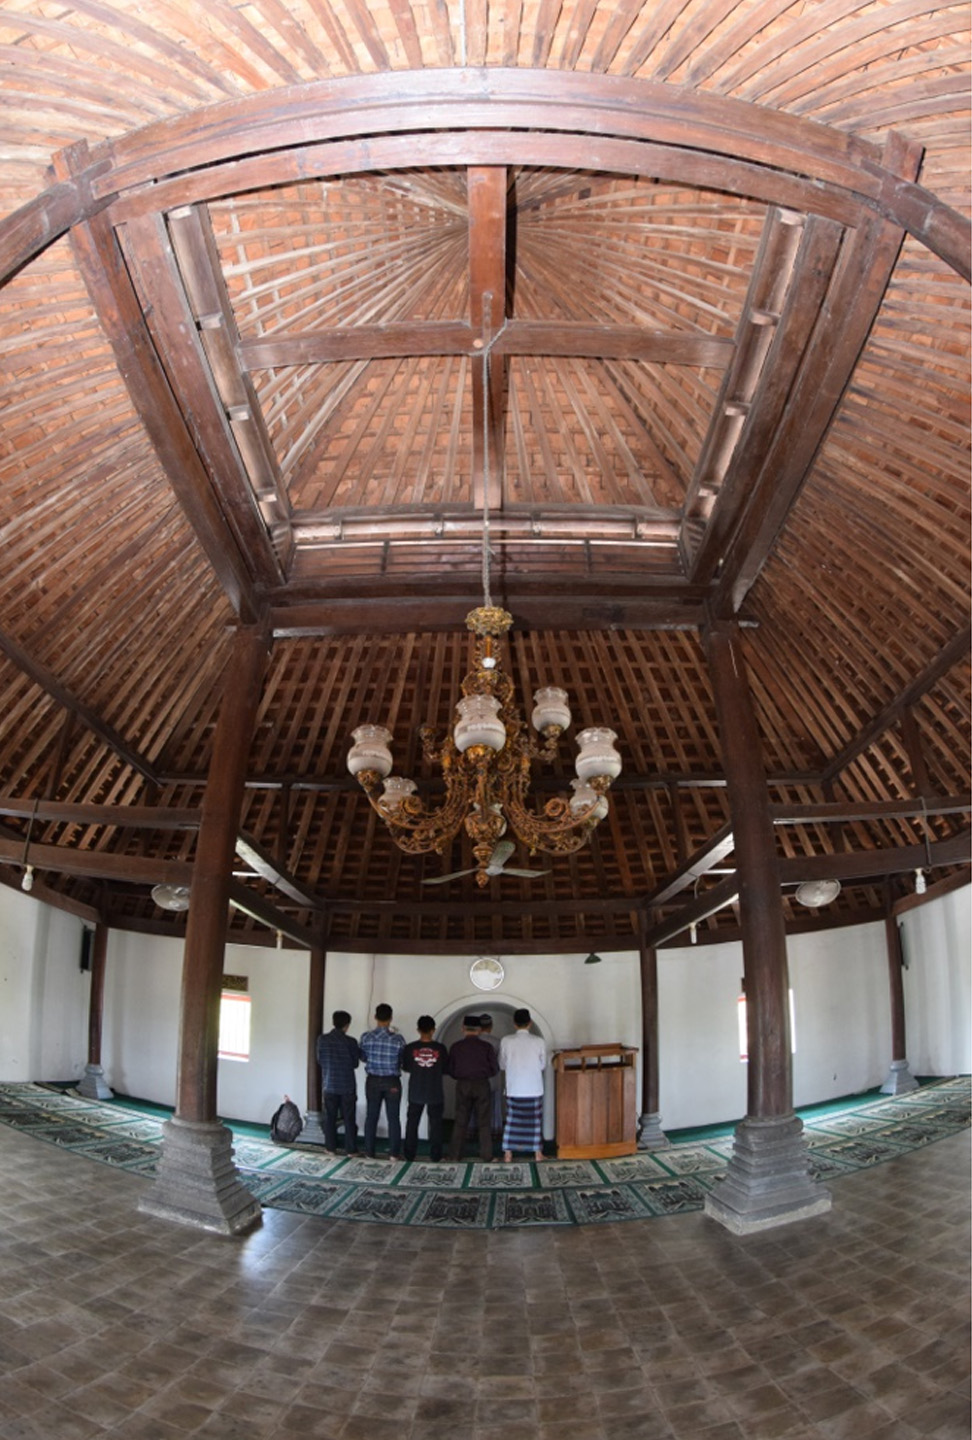 Ruang Masjid Gala dengan tiang-tiang penyangga atap yang masih asli. (foto: Sungkono)